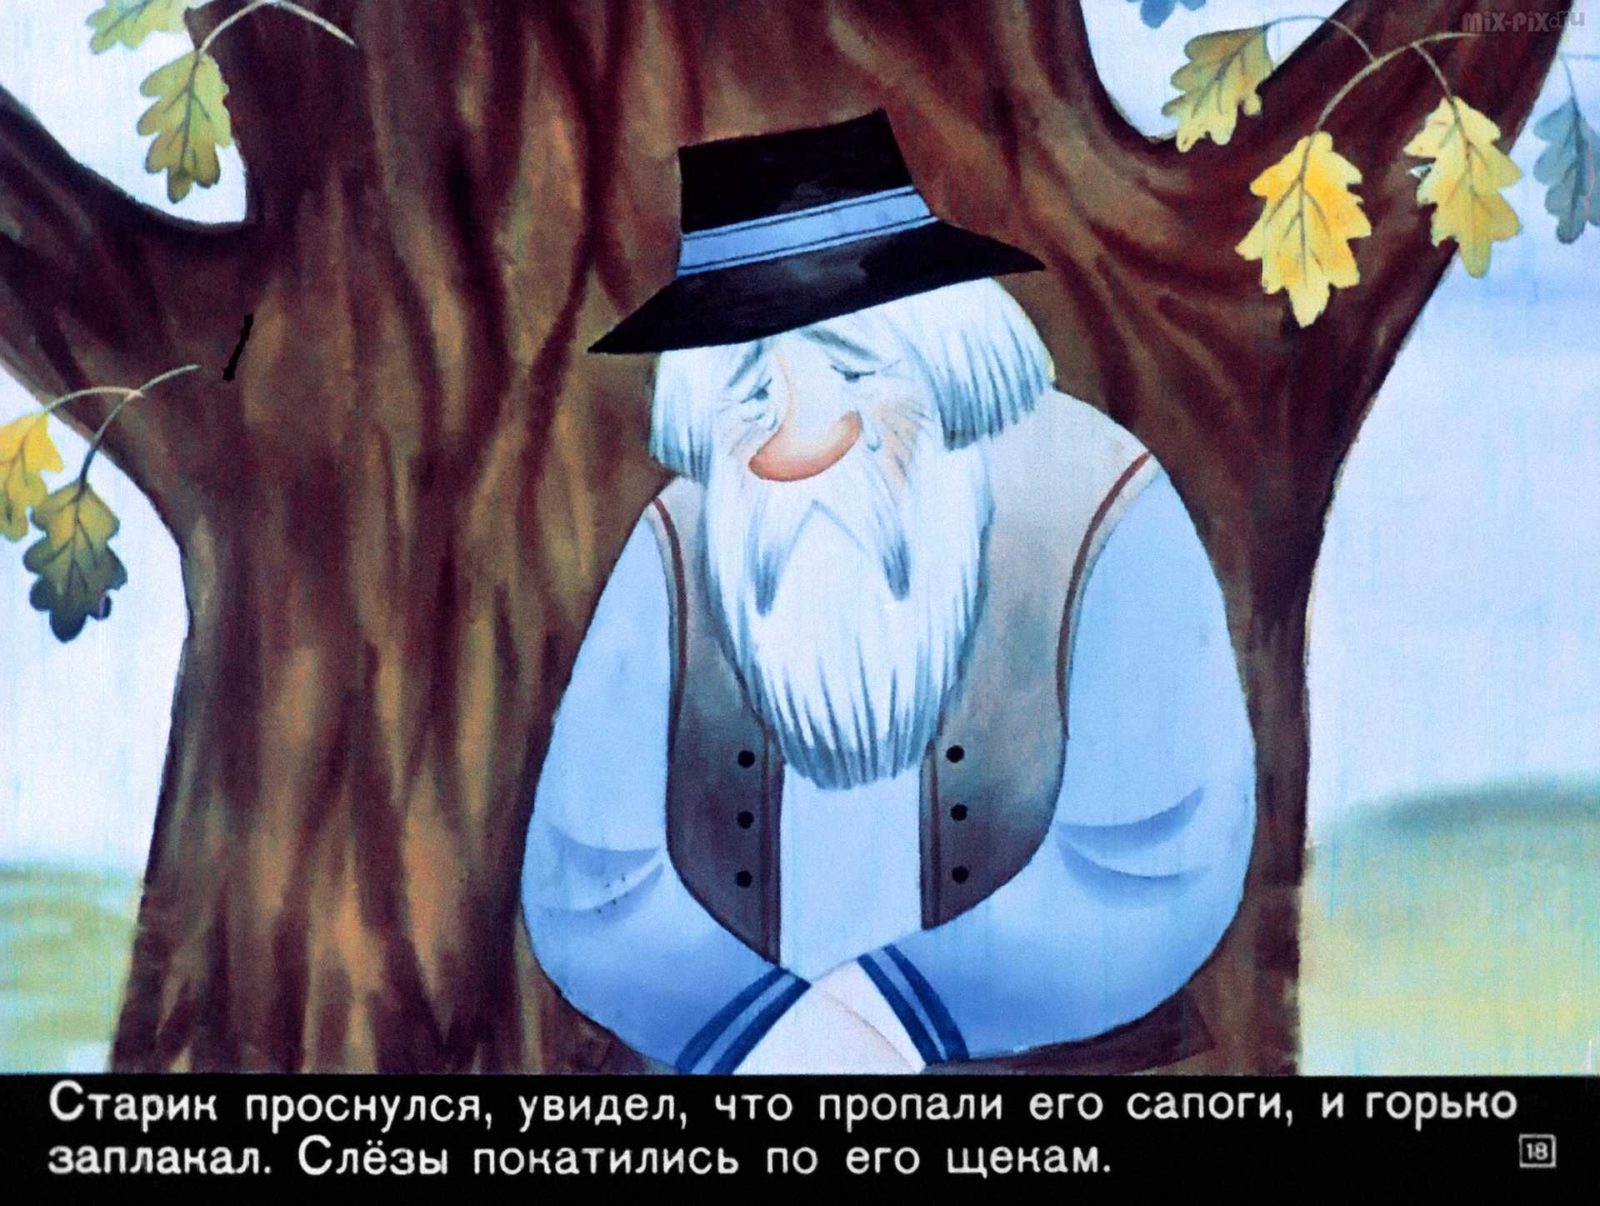 Сапожник Копытко и утка Кря (1972) 30